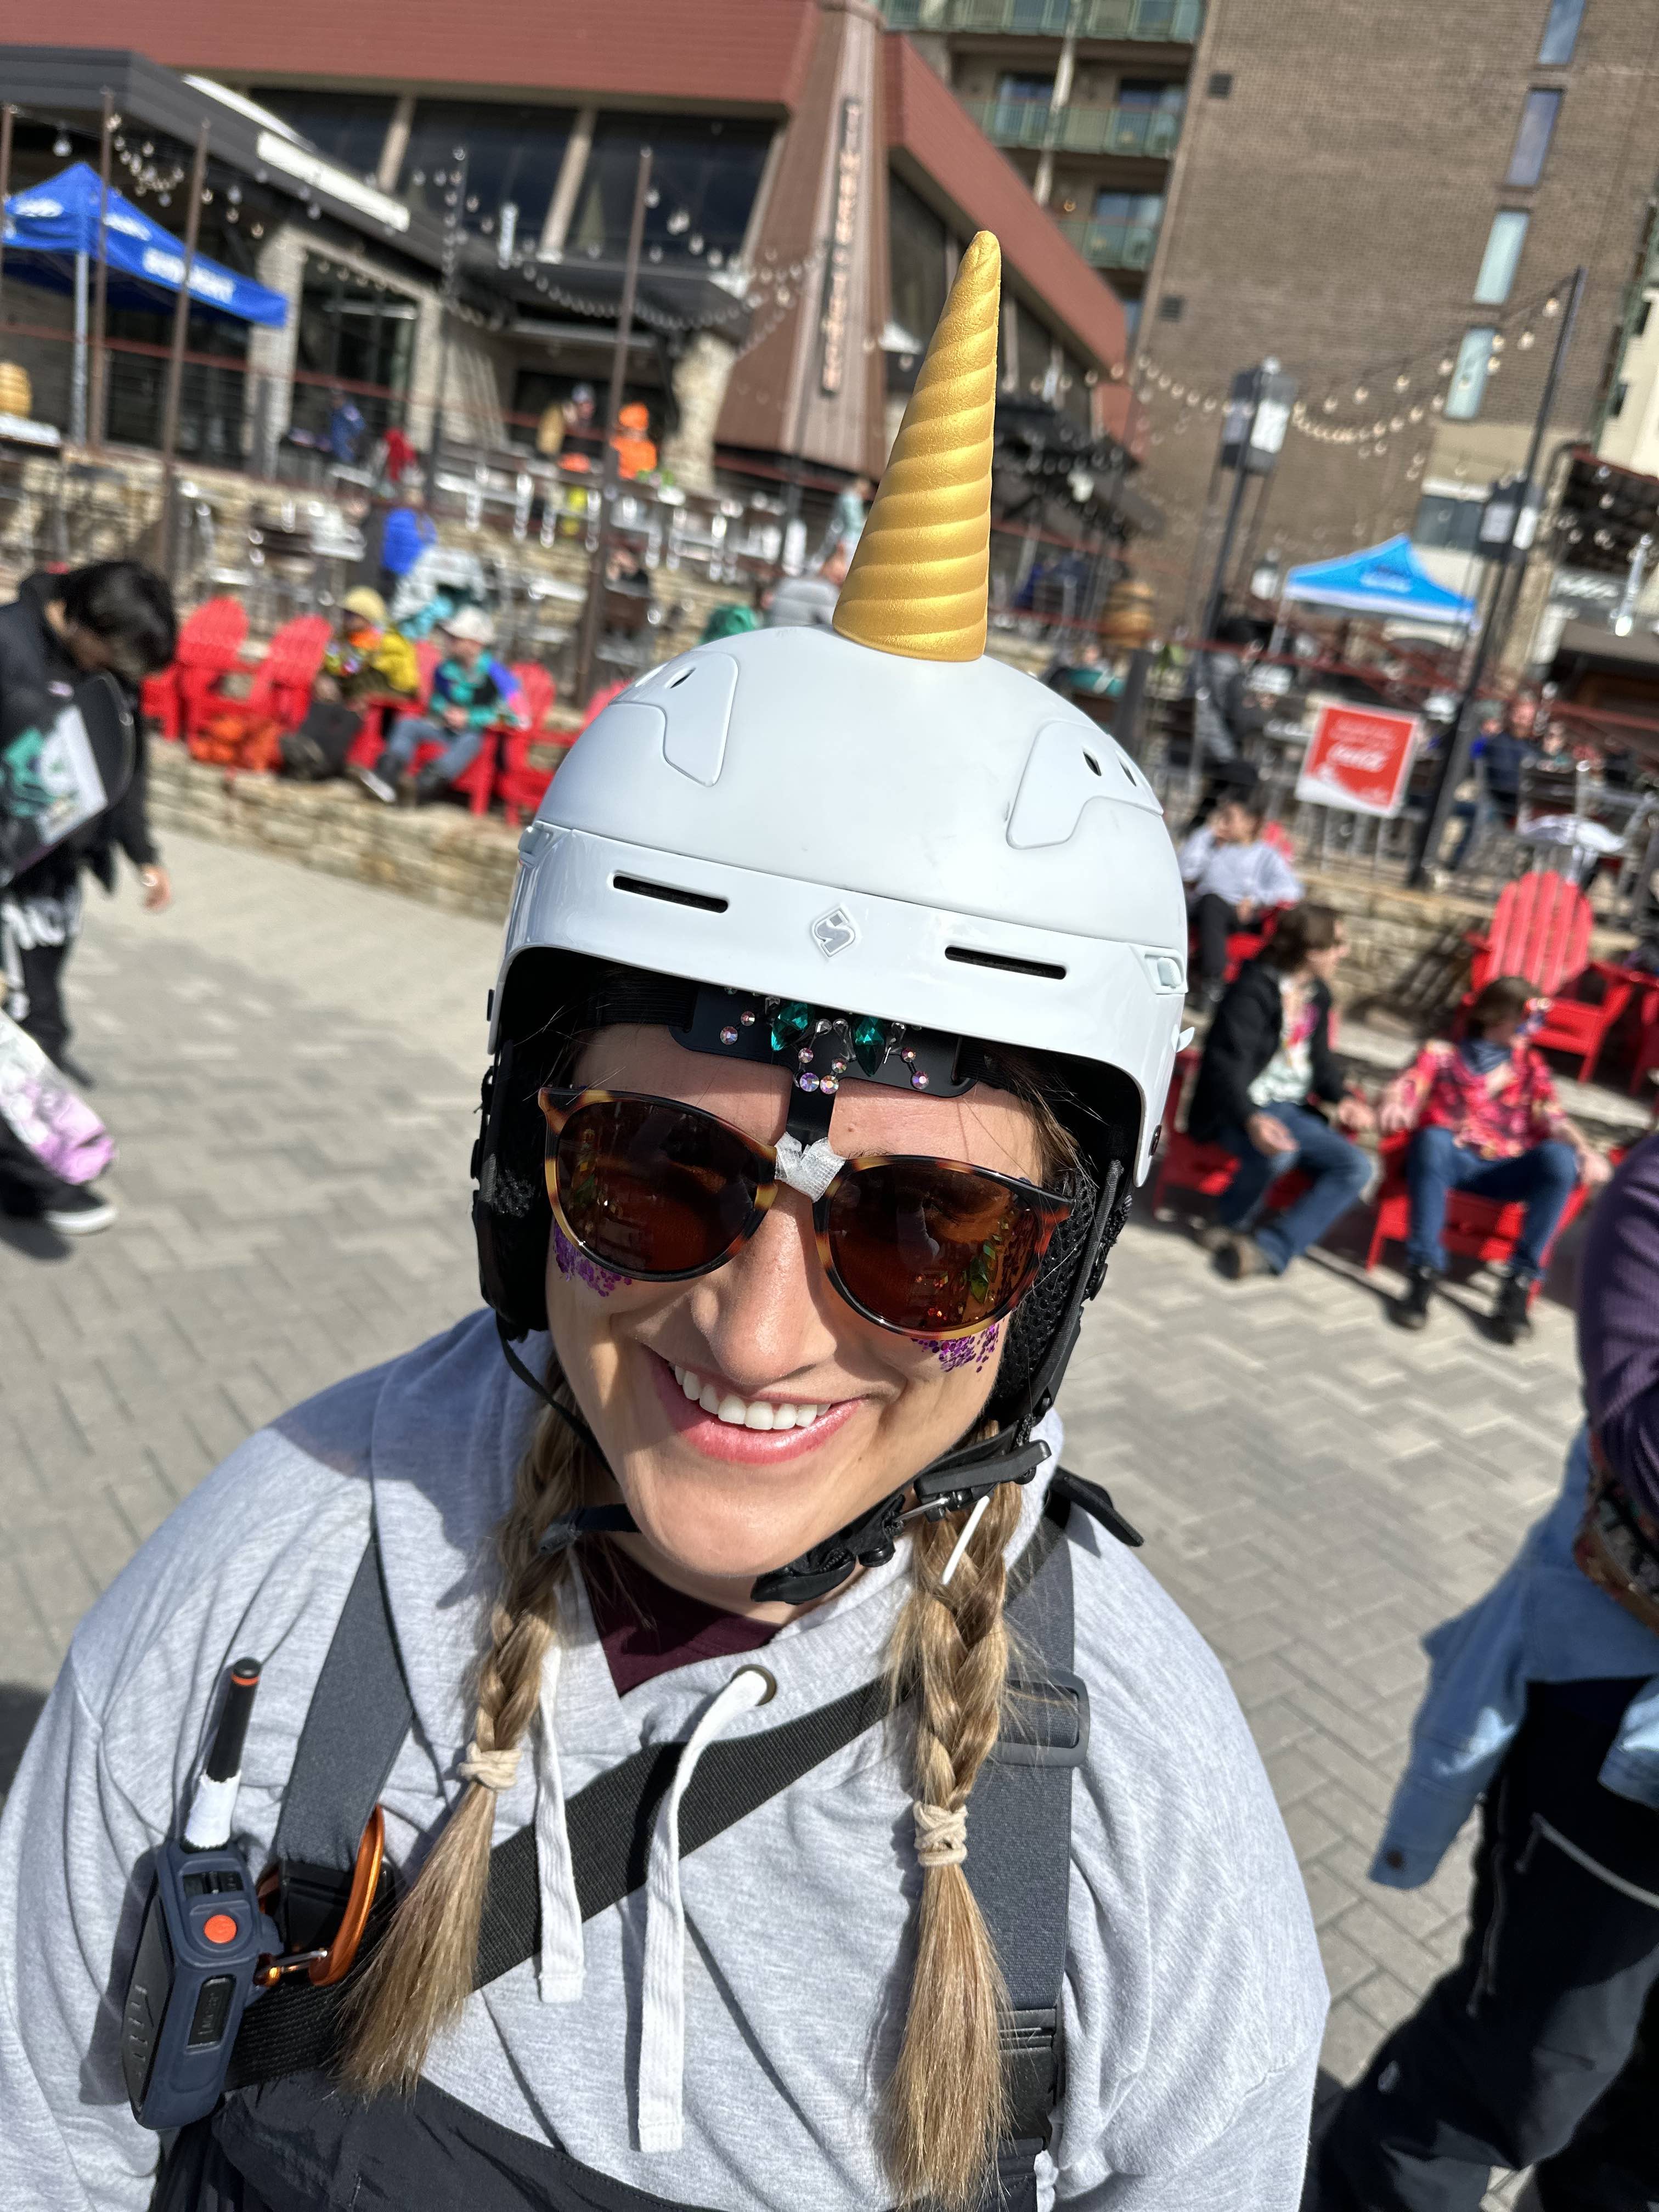 Unicorn horn for motorcycle helmet, ski helmet or bike helmet